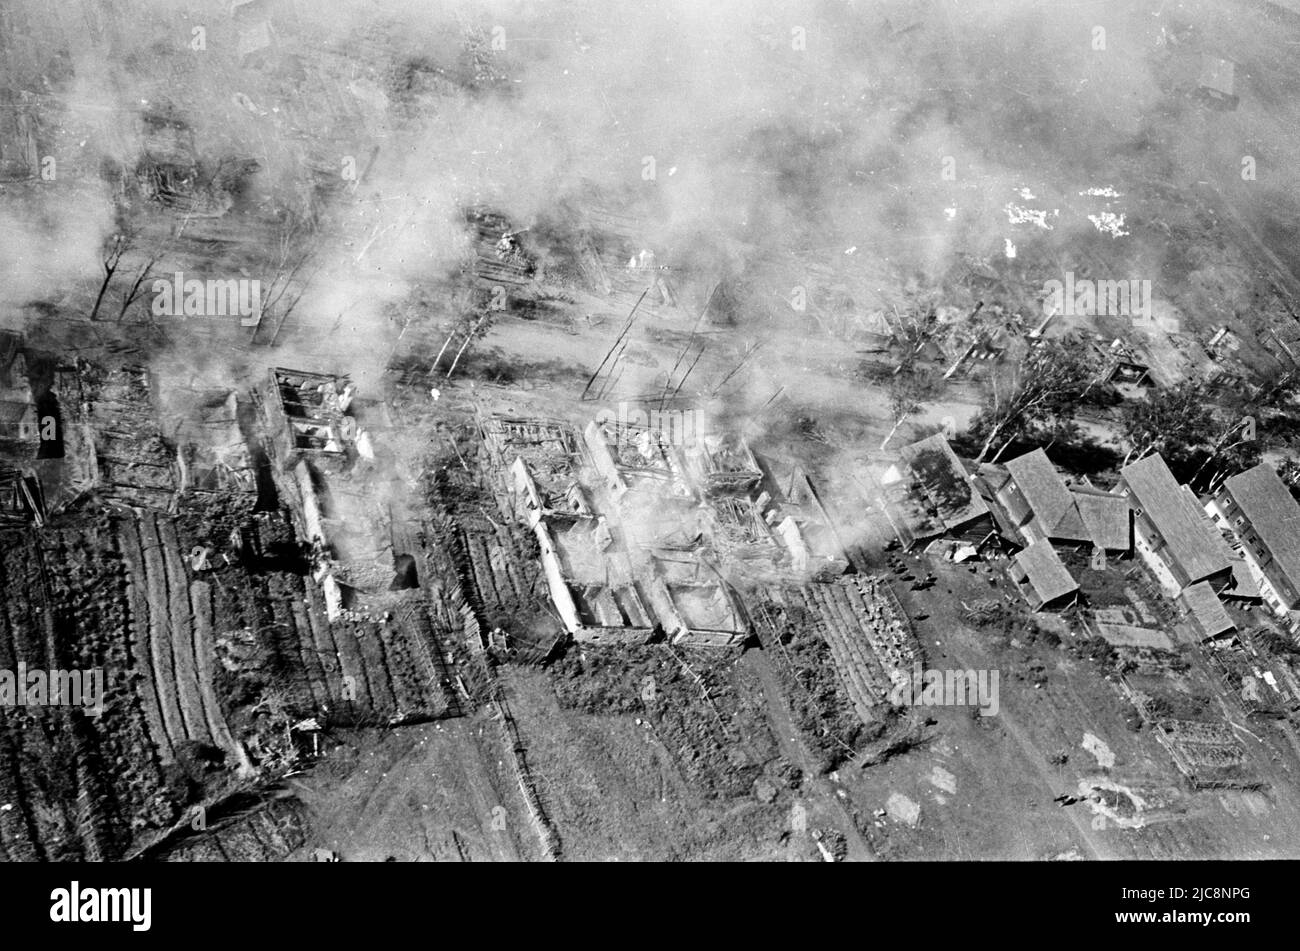 Bomba colpito documentazione dopo l'attacco aereo tedesco bomba durante la guerra mondiale 2 nel settembre 1942 nella zona di Donezk - Luhansk, Ucraina Foto Stock